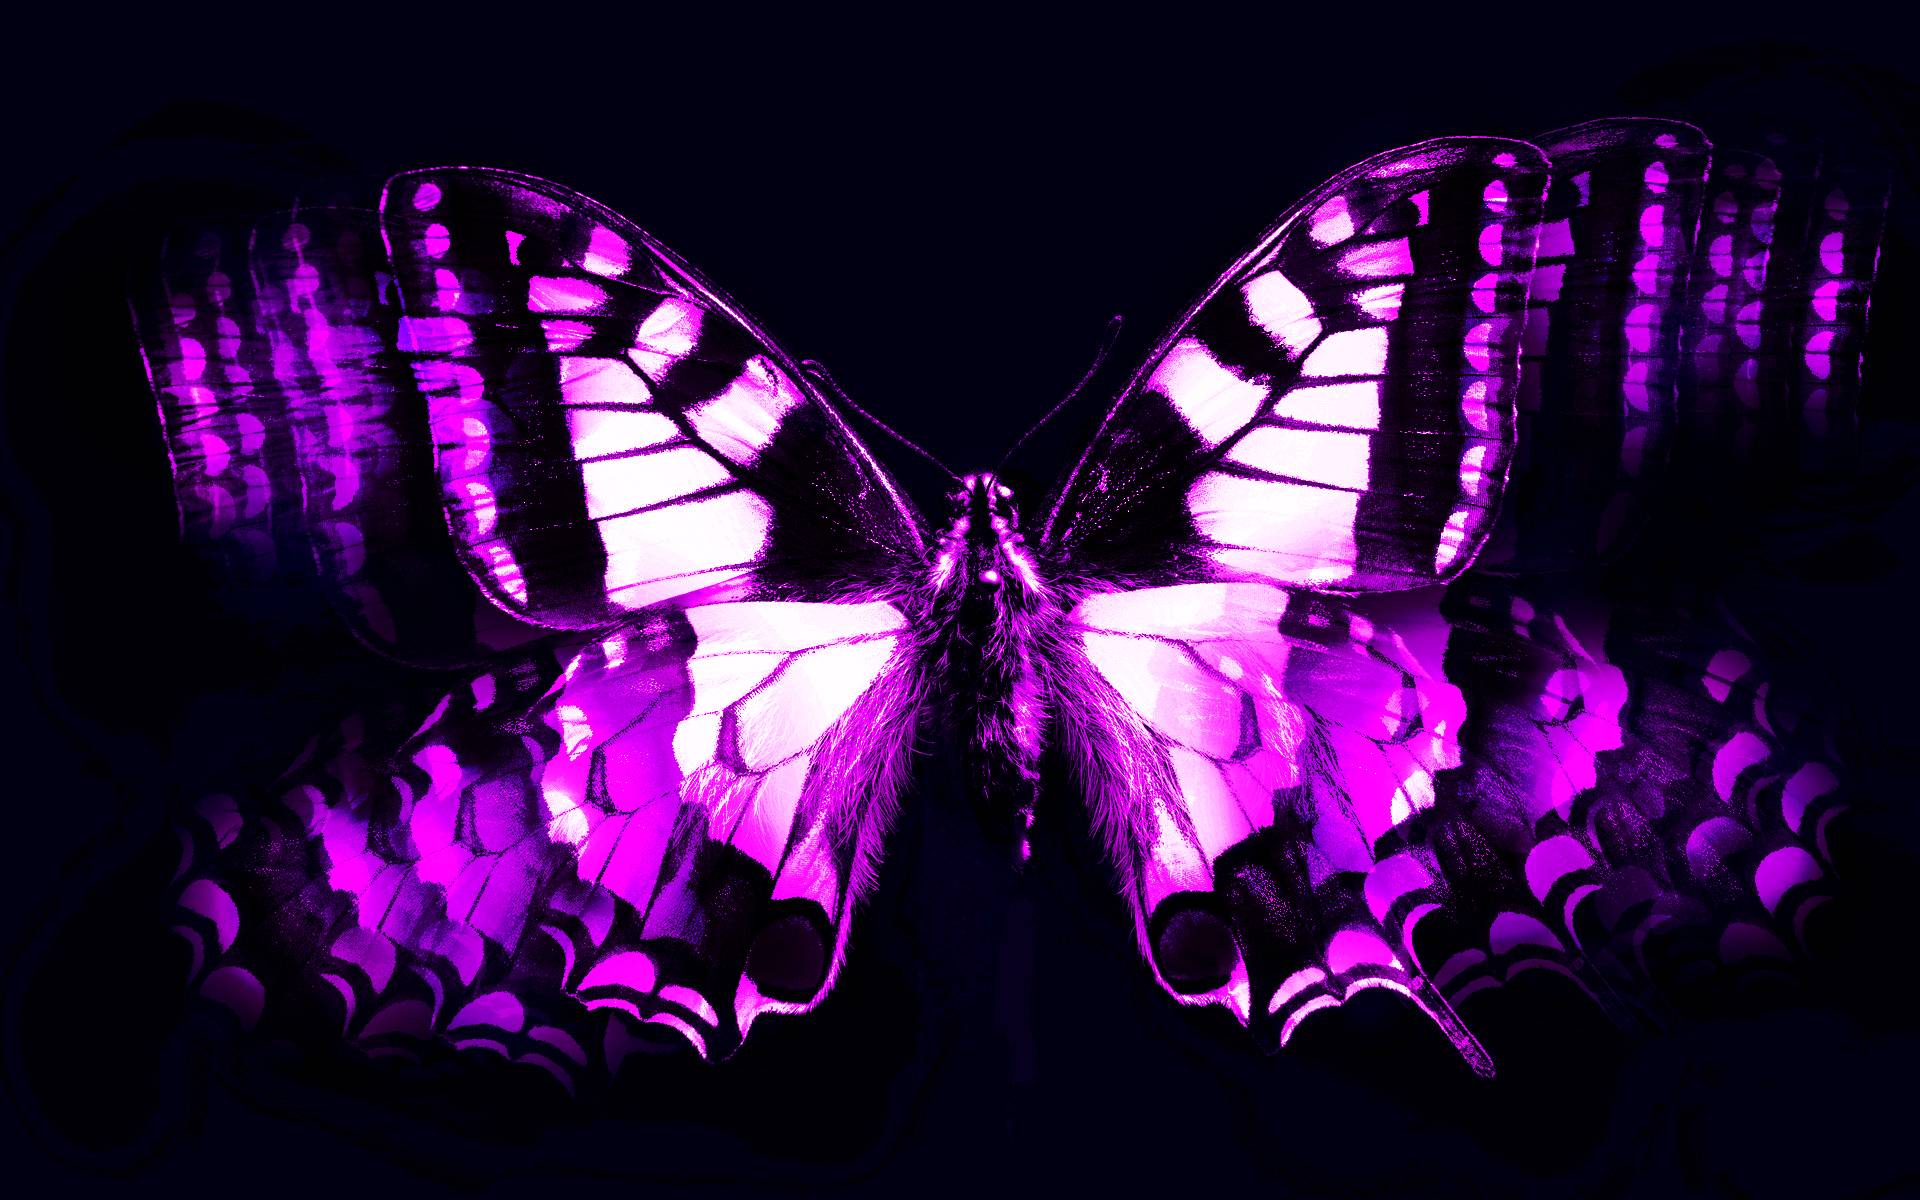 Gallery For Gt Purple Butterflies Wallpaper